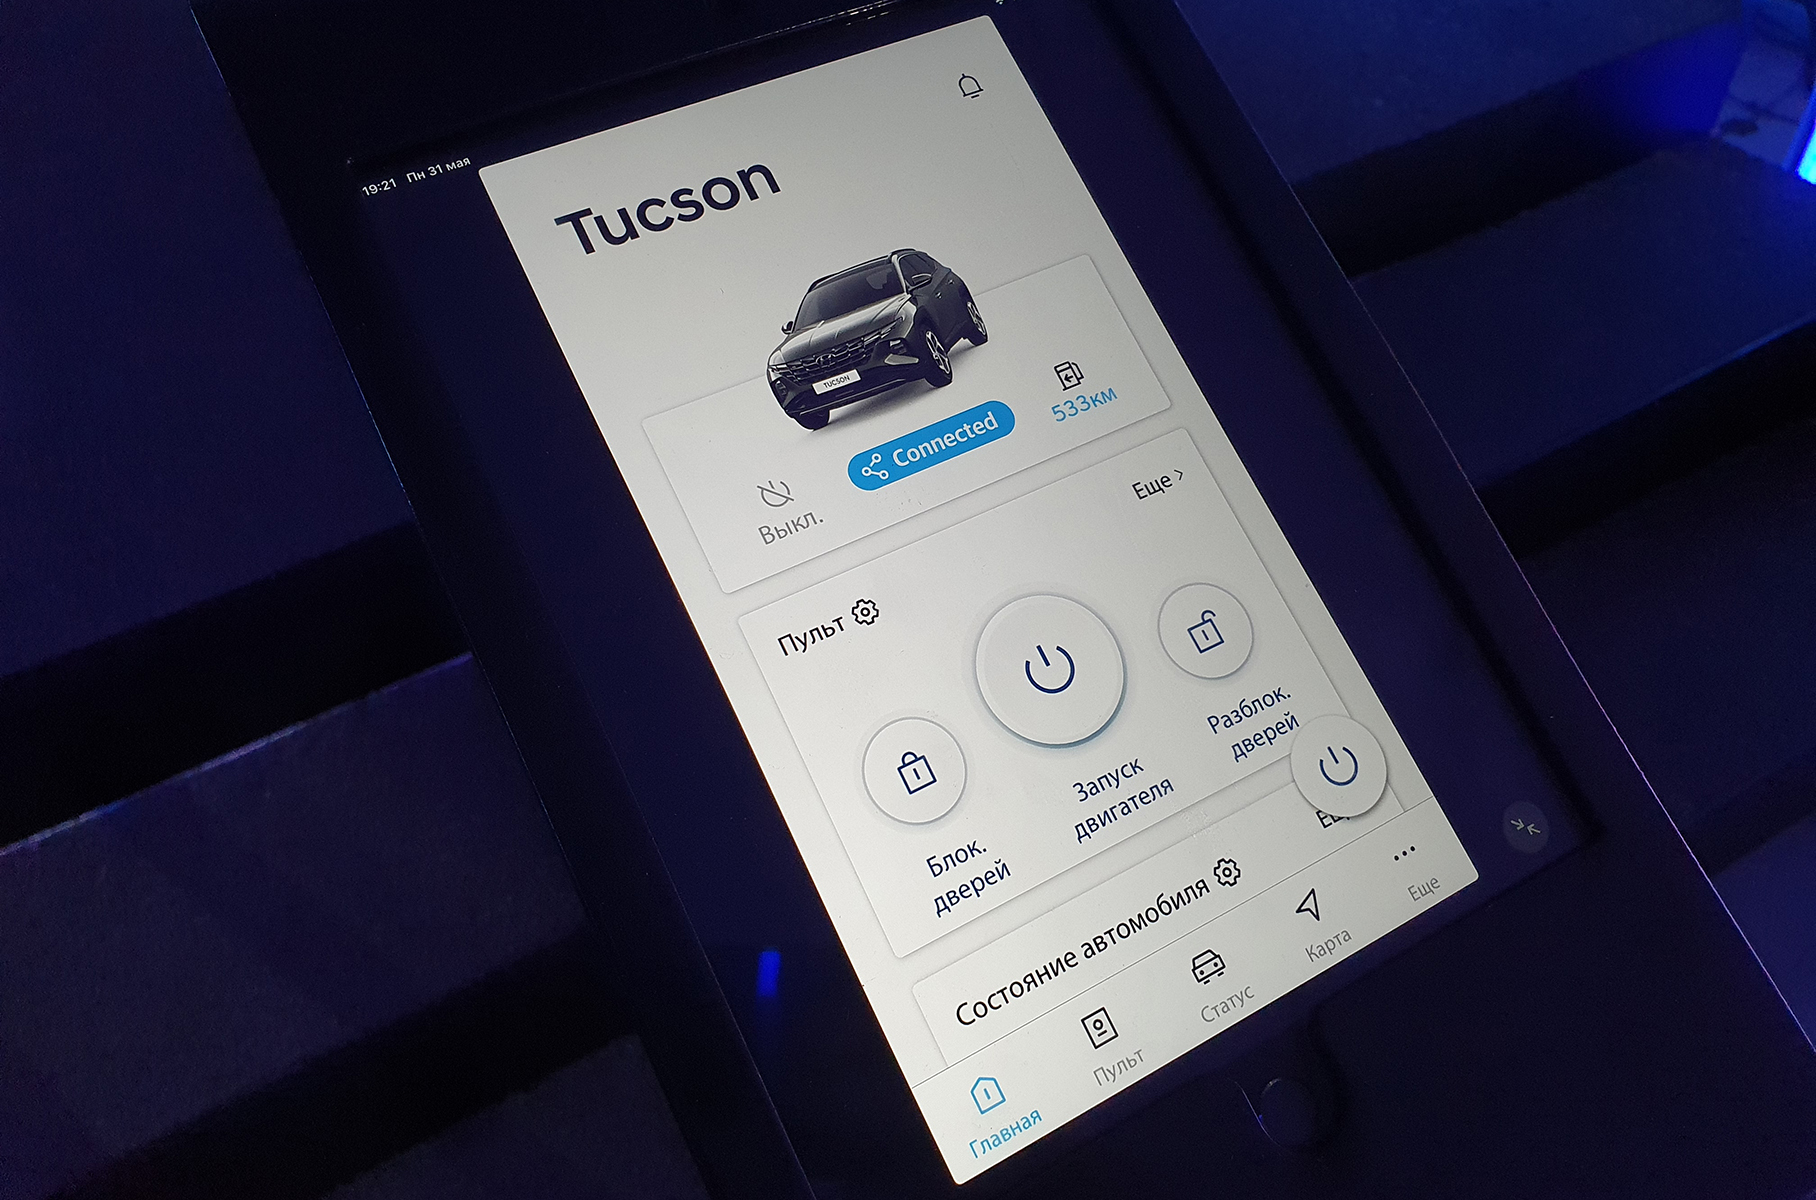 Рассматриваем в деталях новый Hyundai Tucson для России